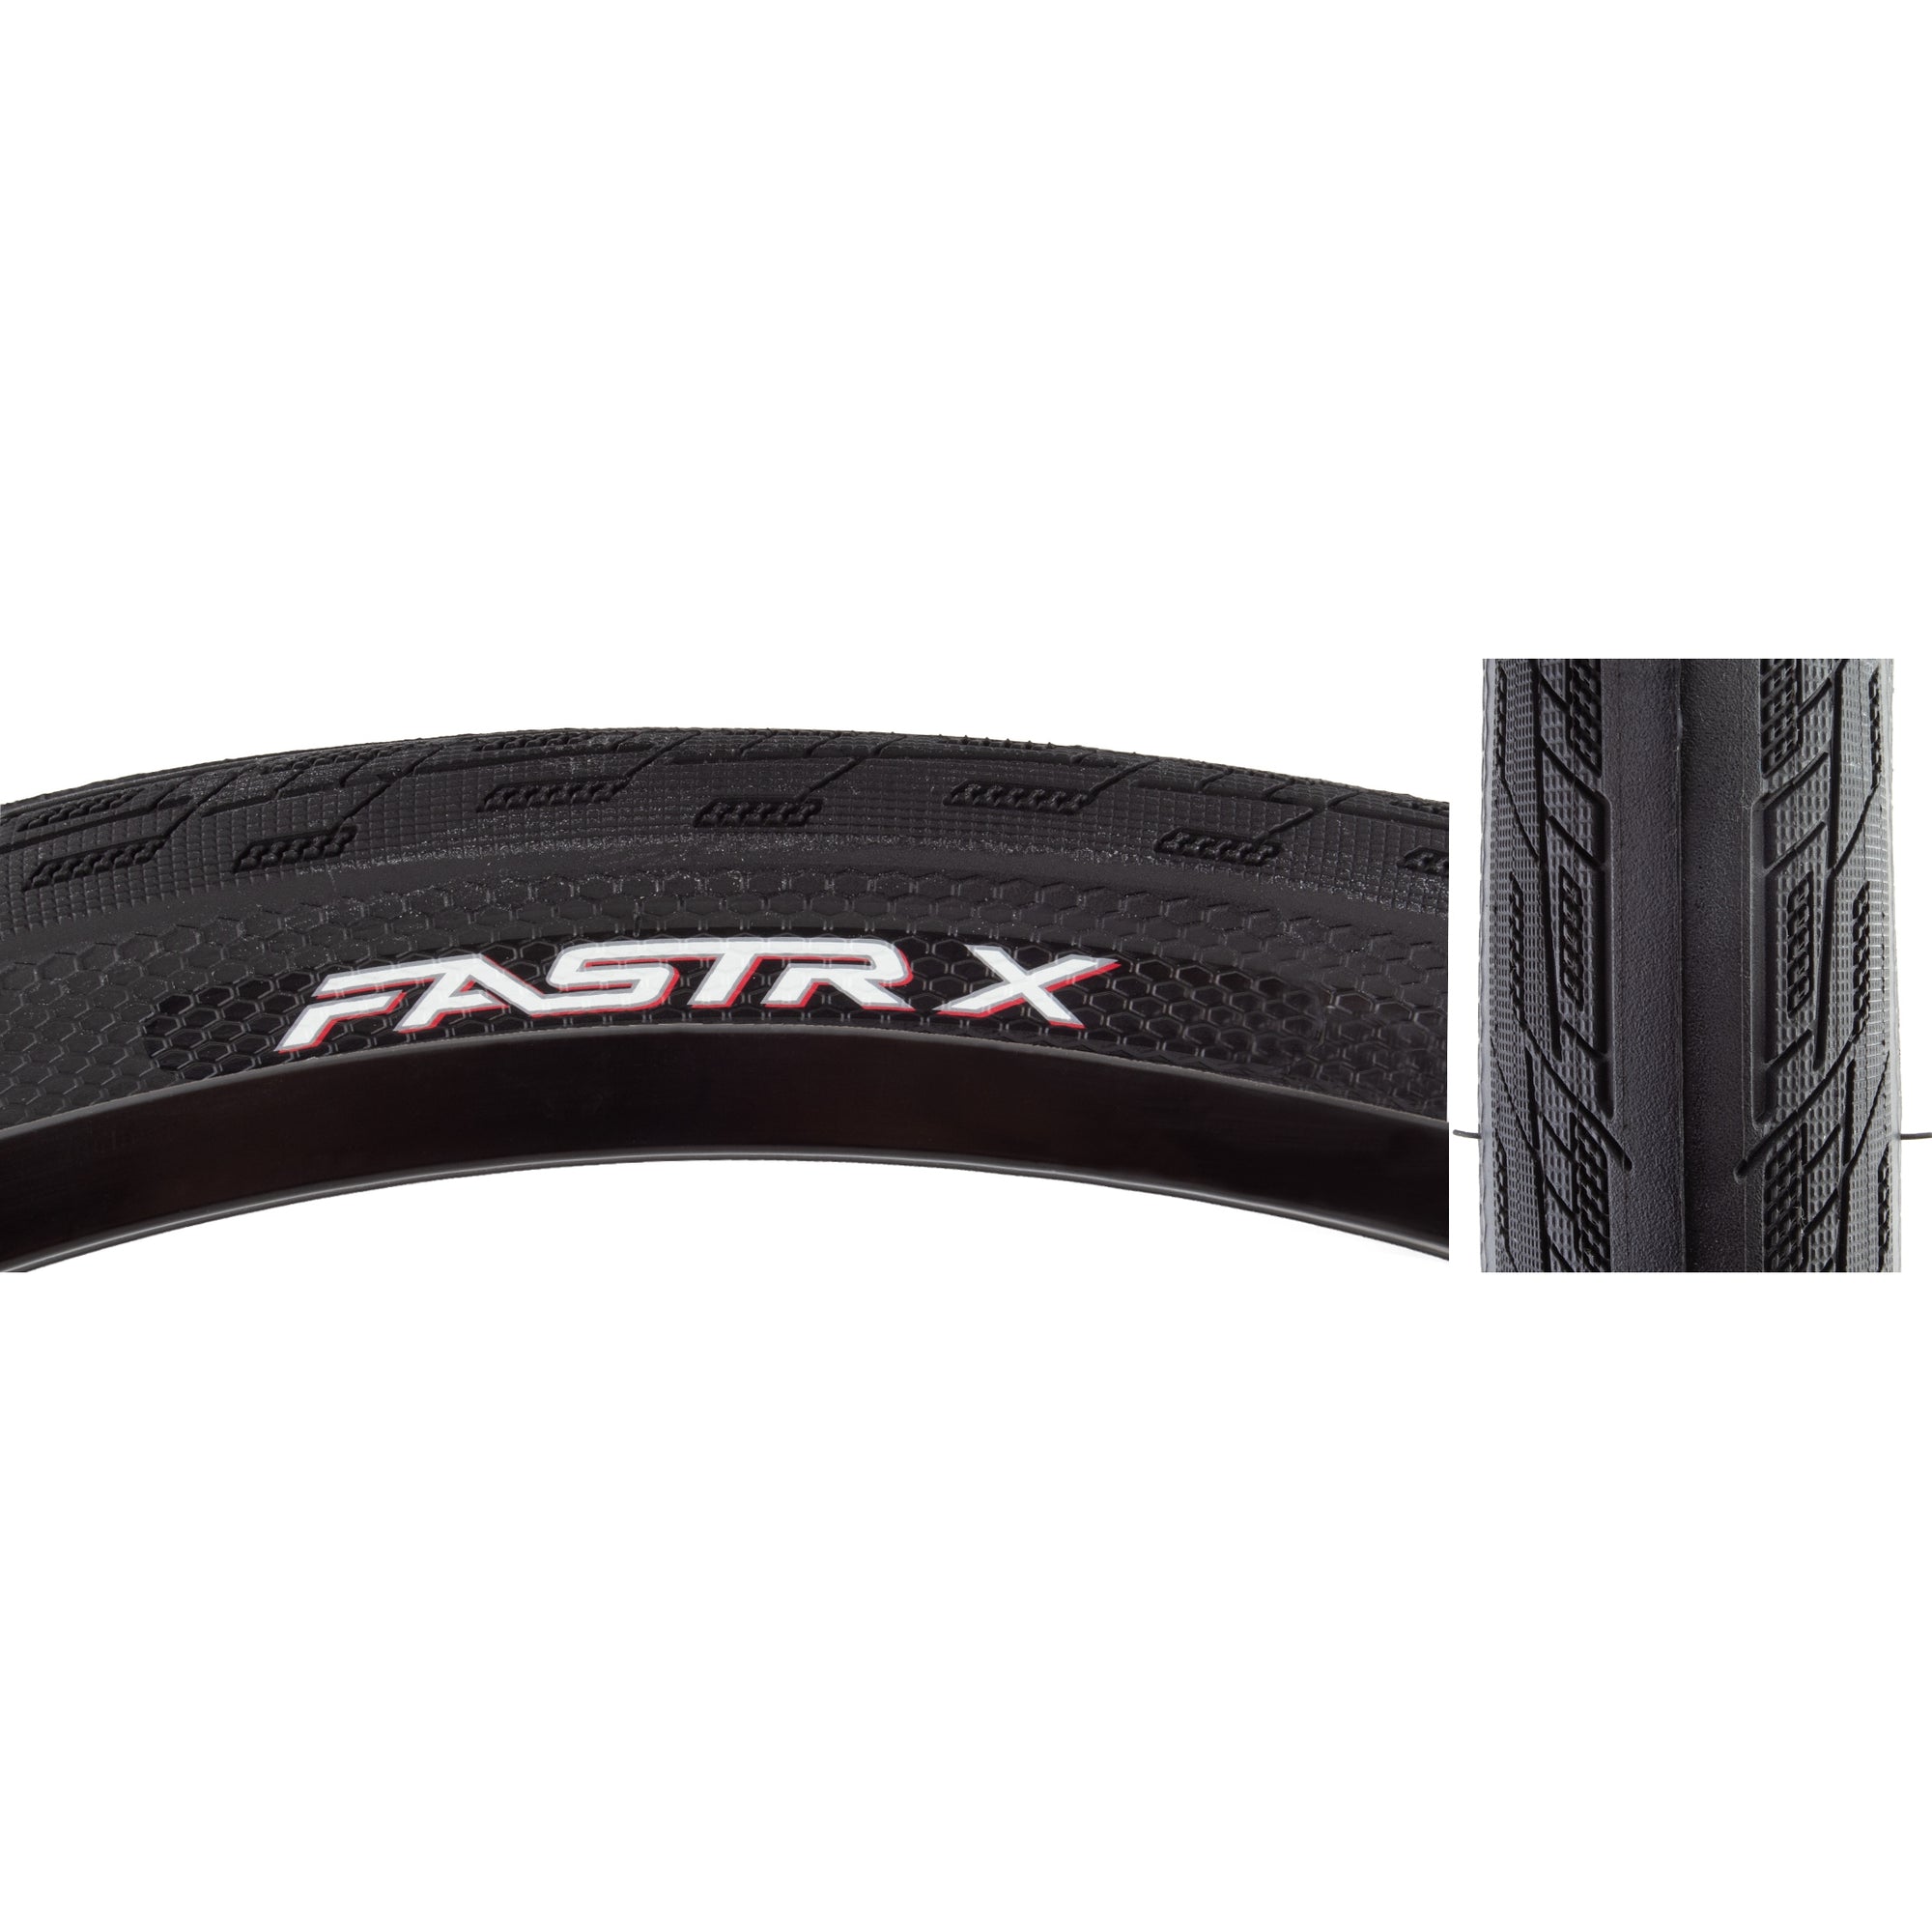 24x1.75 Tioga Fastr-X BMX Tire - Black